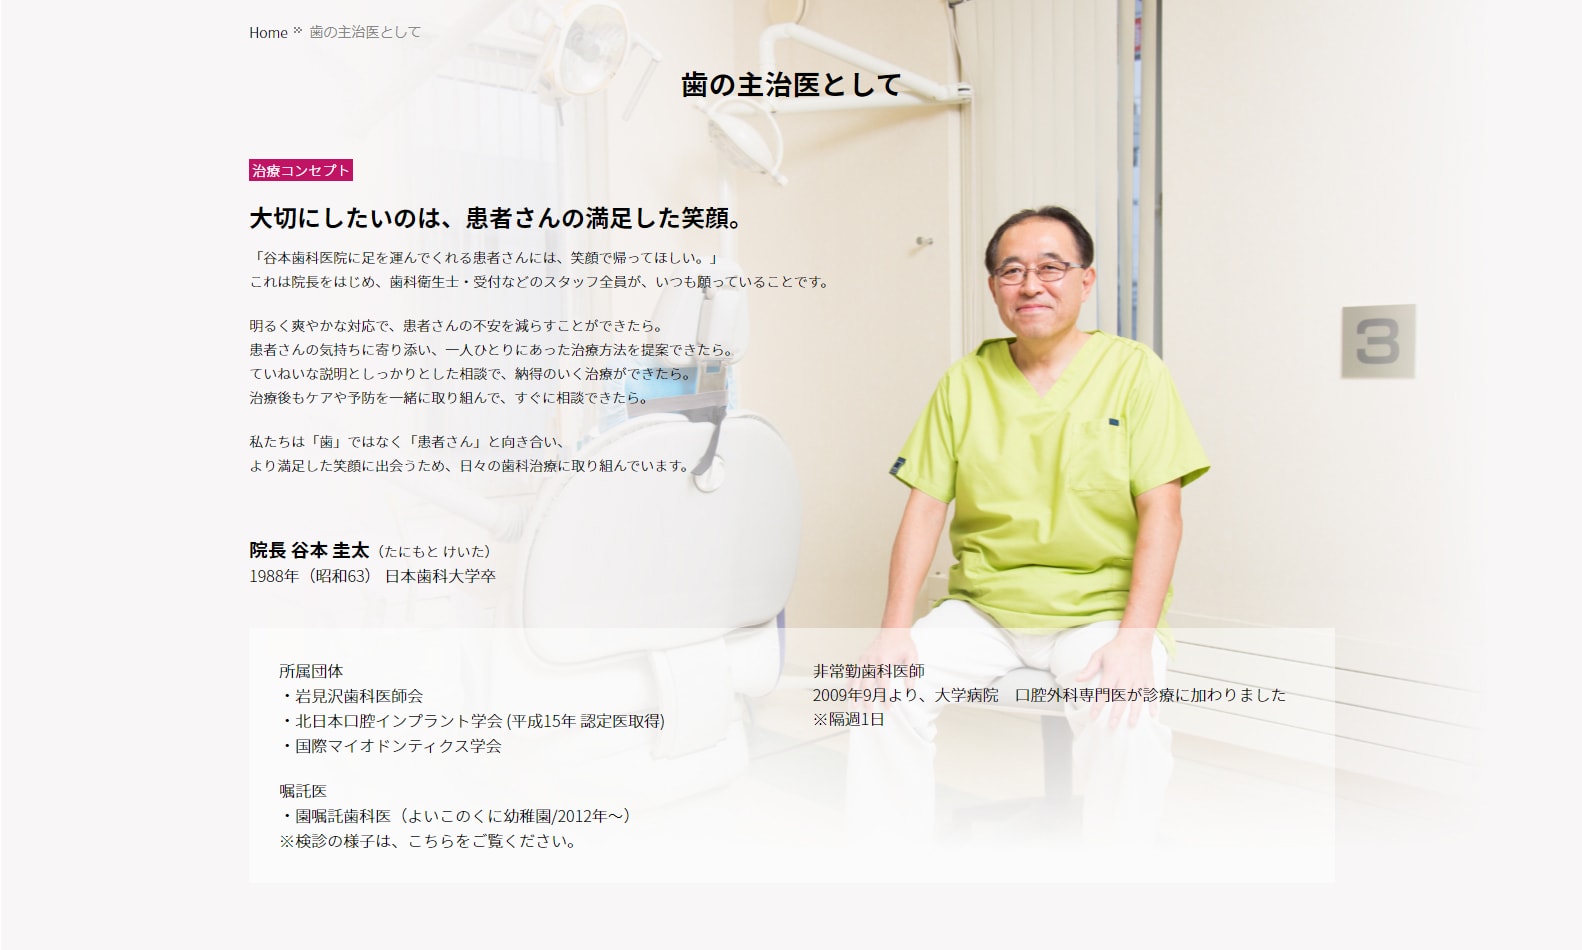 「谷本歯科医院」様サイトのページ画像1